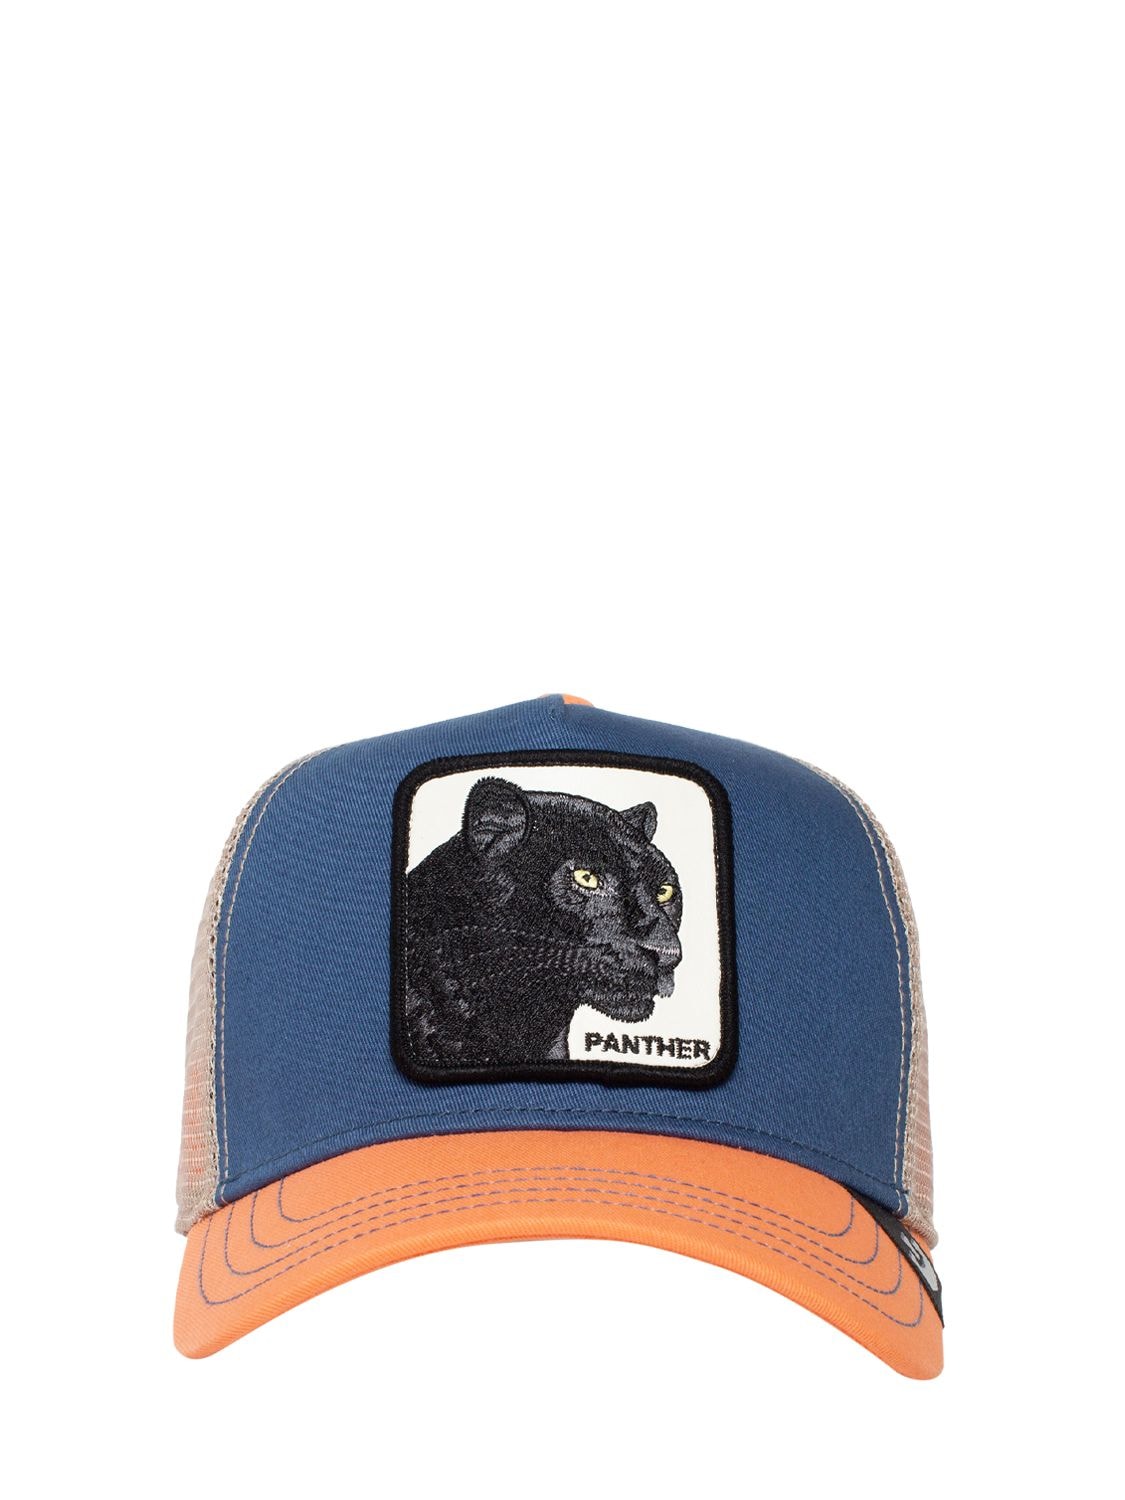 Goorin Bros Panther Trucker Hat W/ Patch In Blue,orange